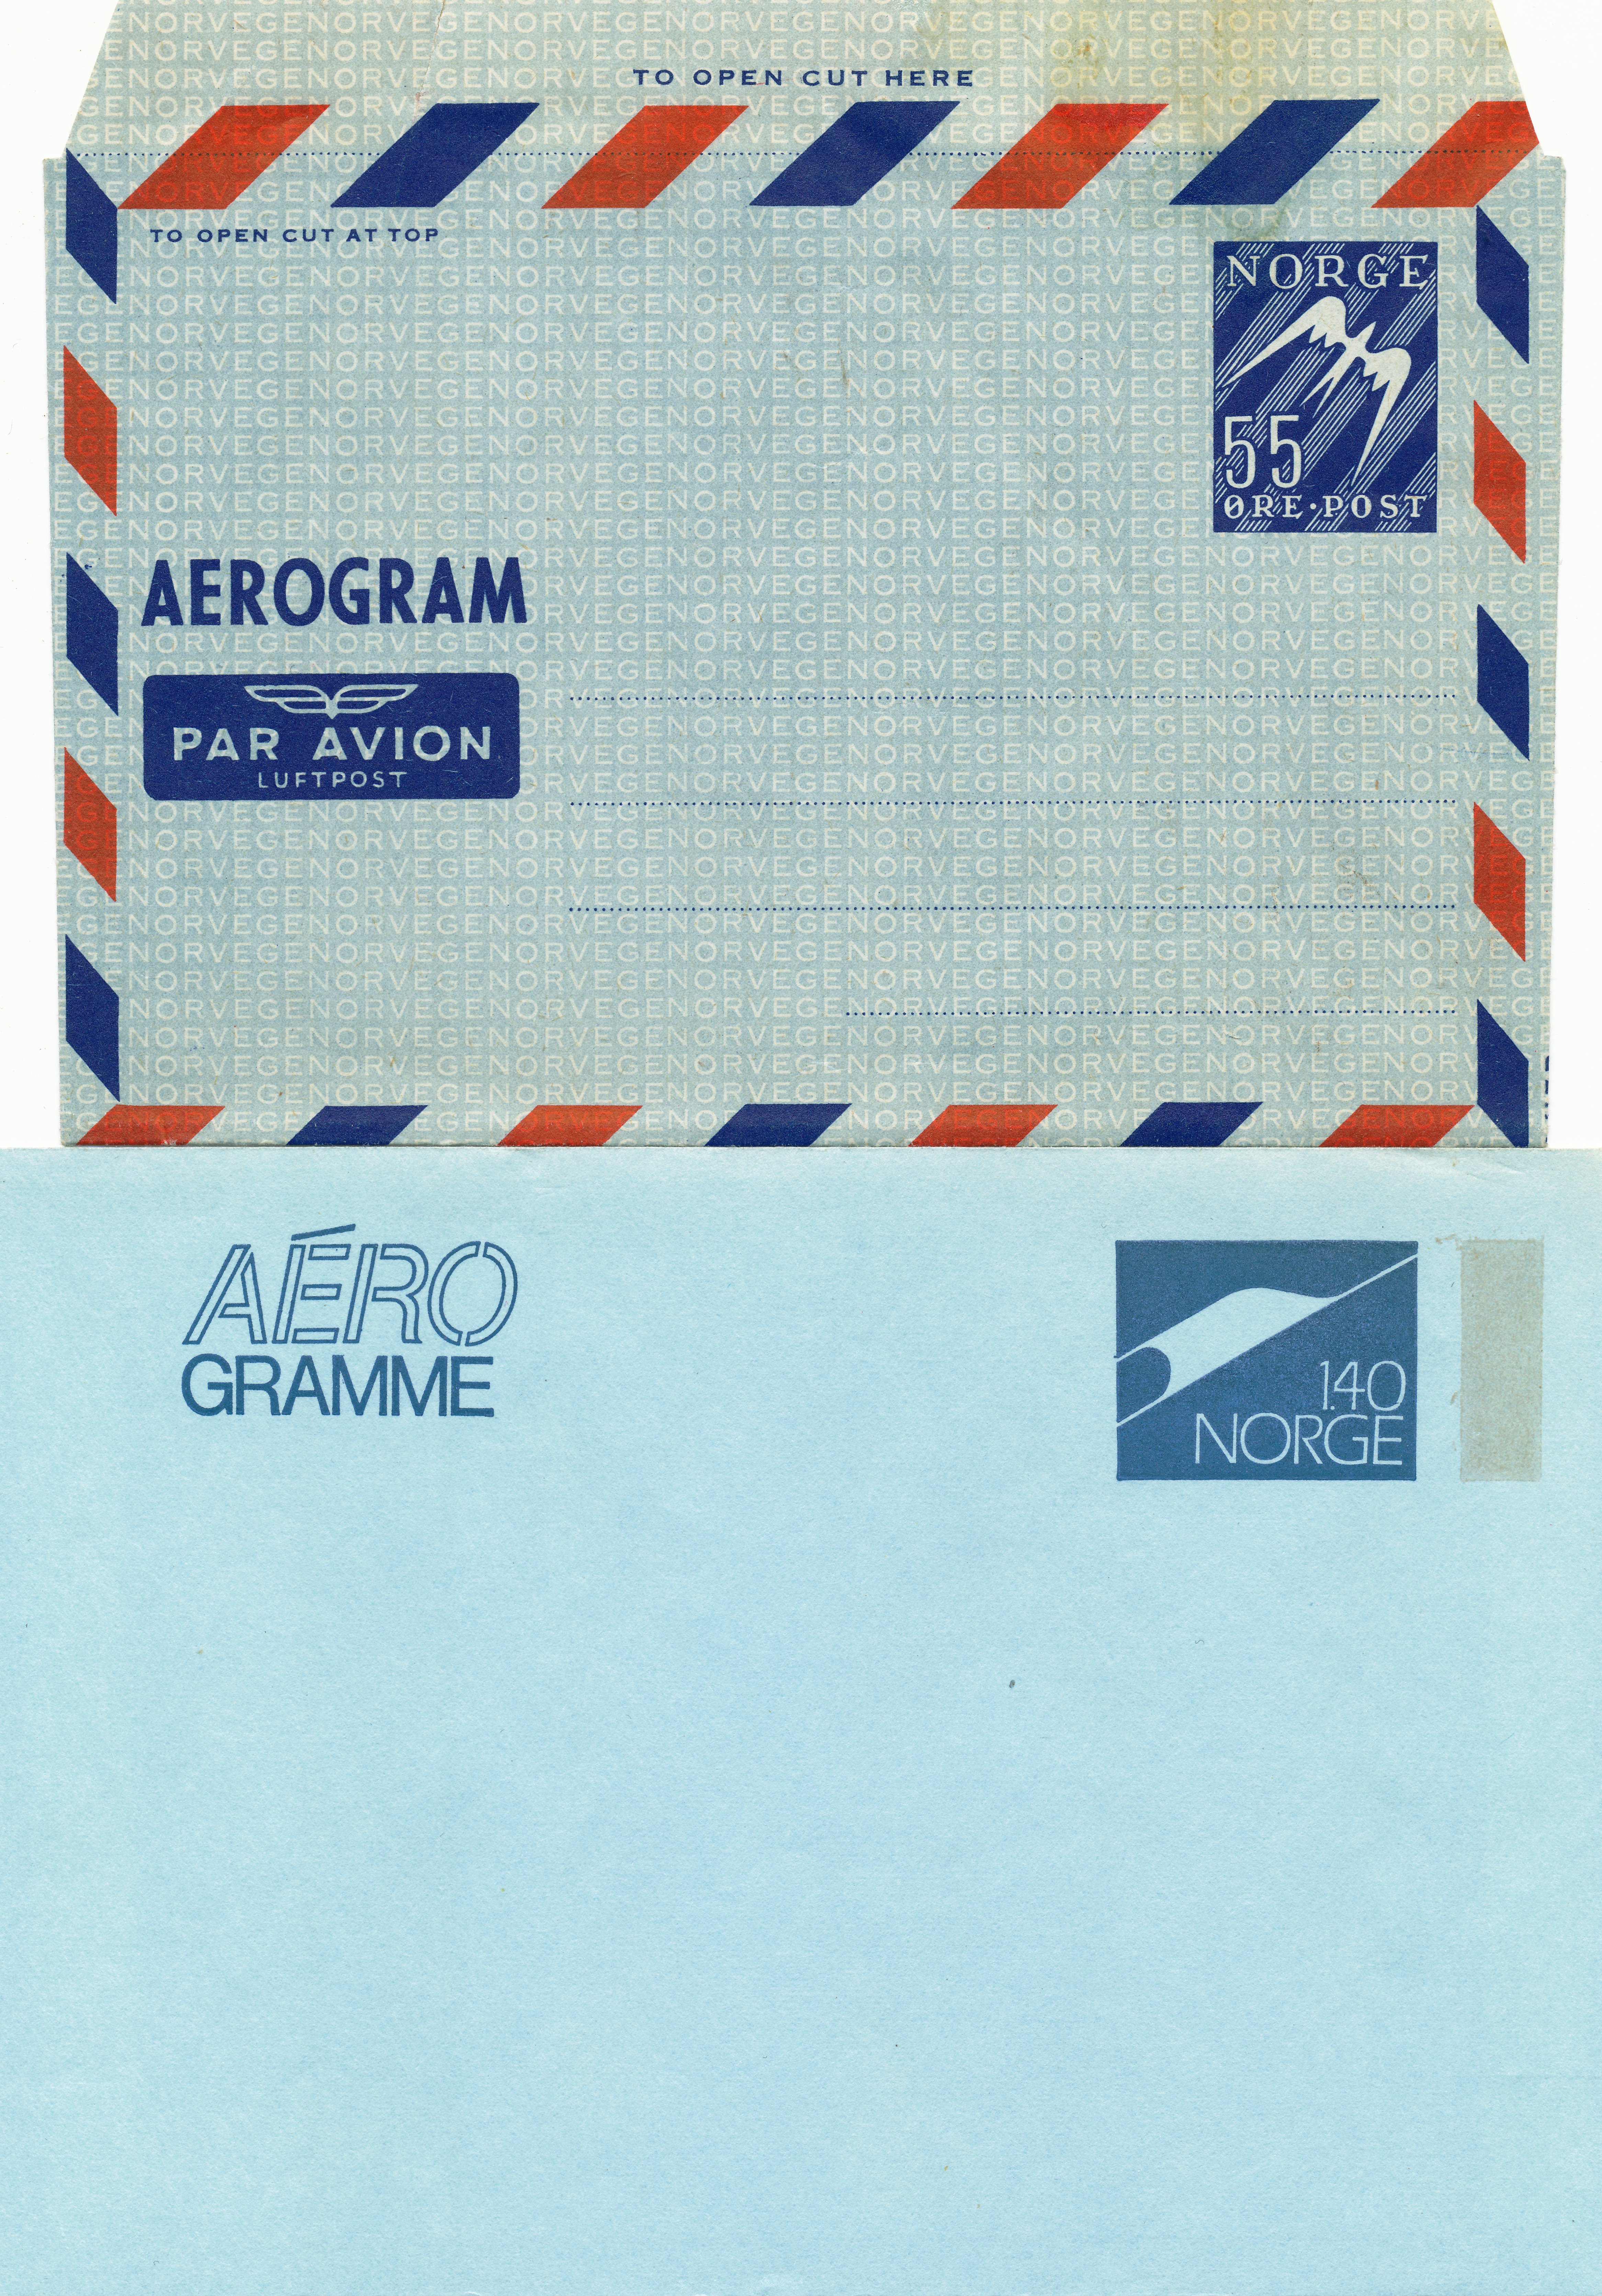 aerogram - CC BY NC SA 3.0